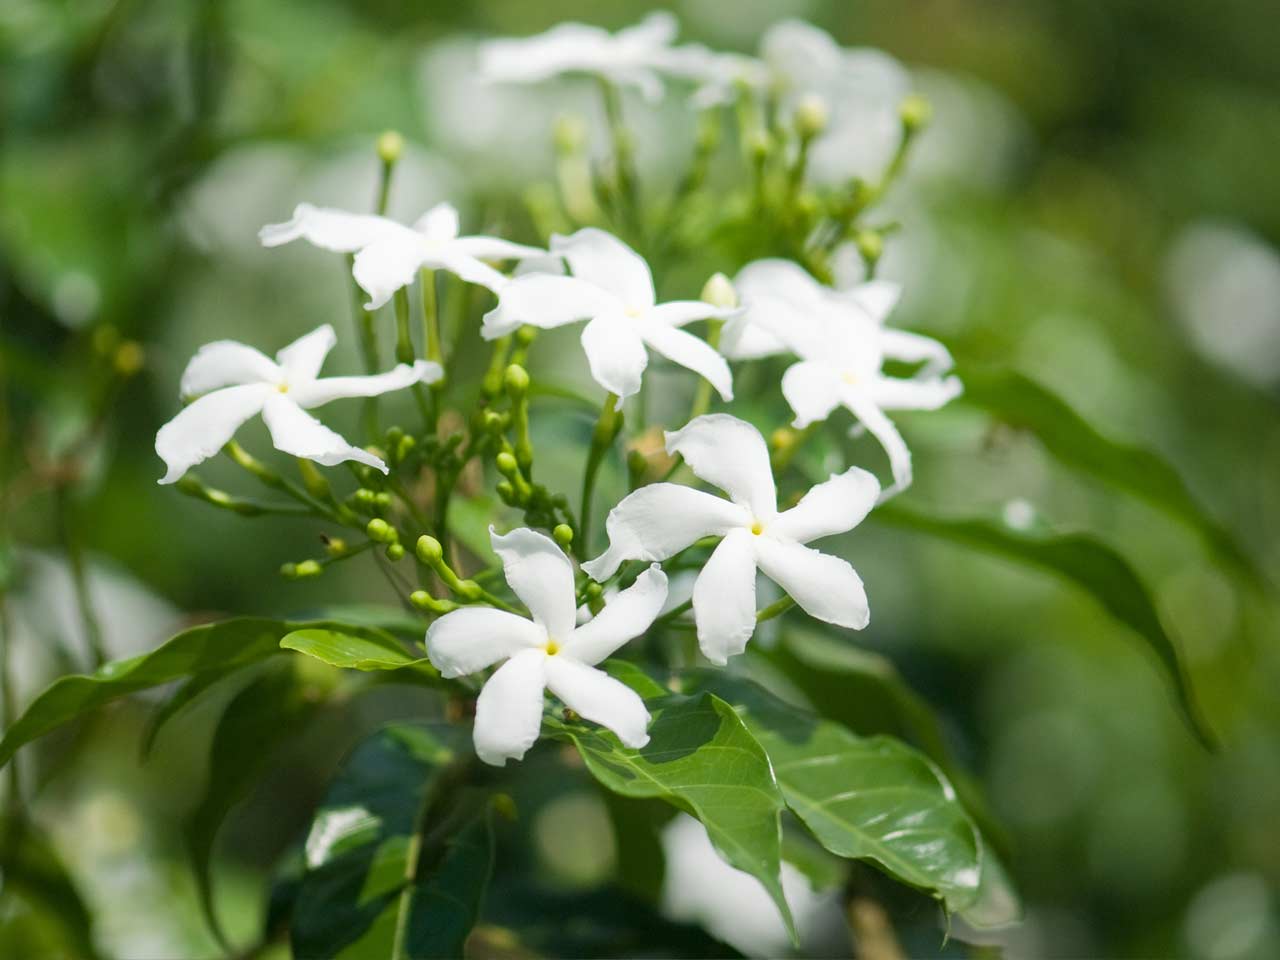 Common white jasmine